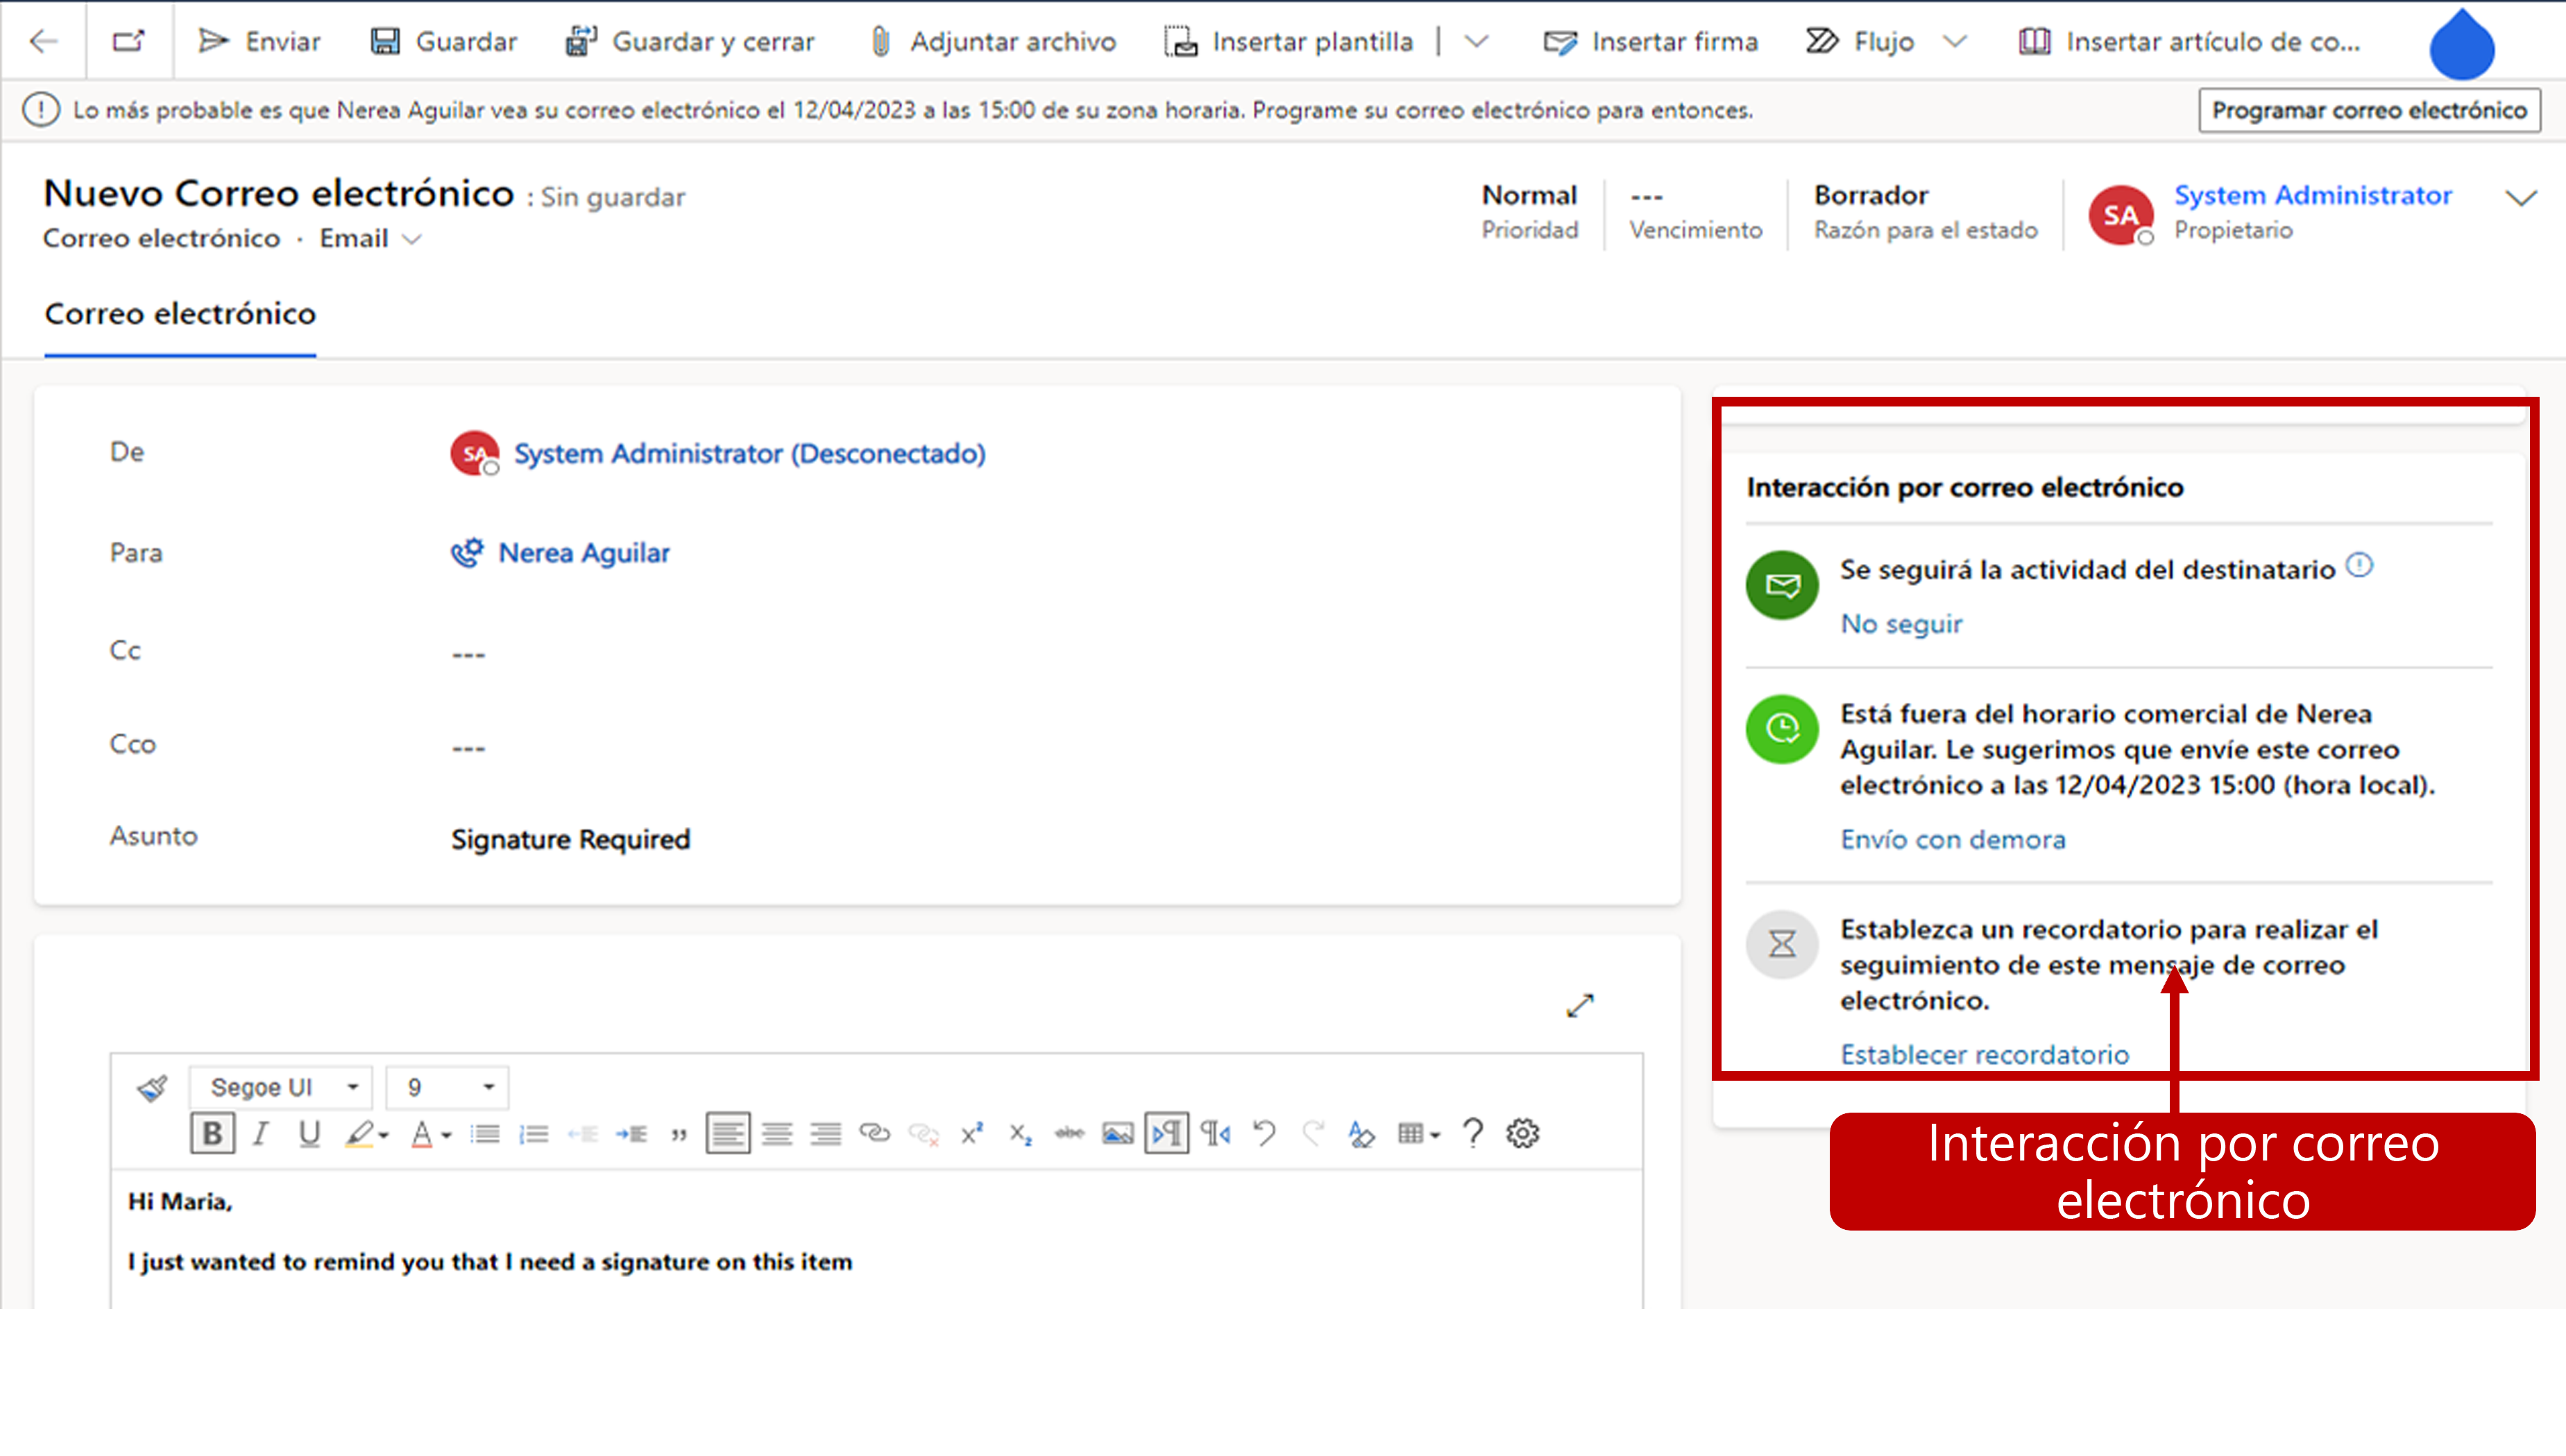 Captura de pantalla con la sección Interacción por correo electrónico resaltada; puede cambiar entre seguir la actividad del destinatario, retrasar el envío o establecer un recordatorio